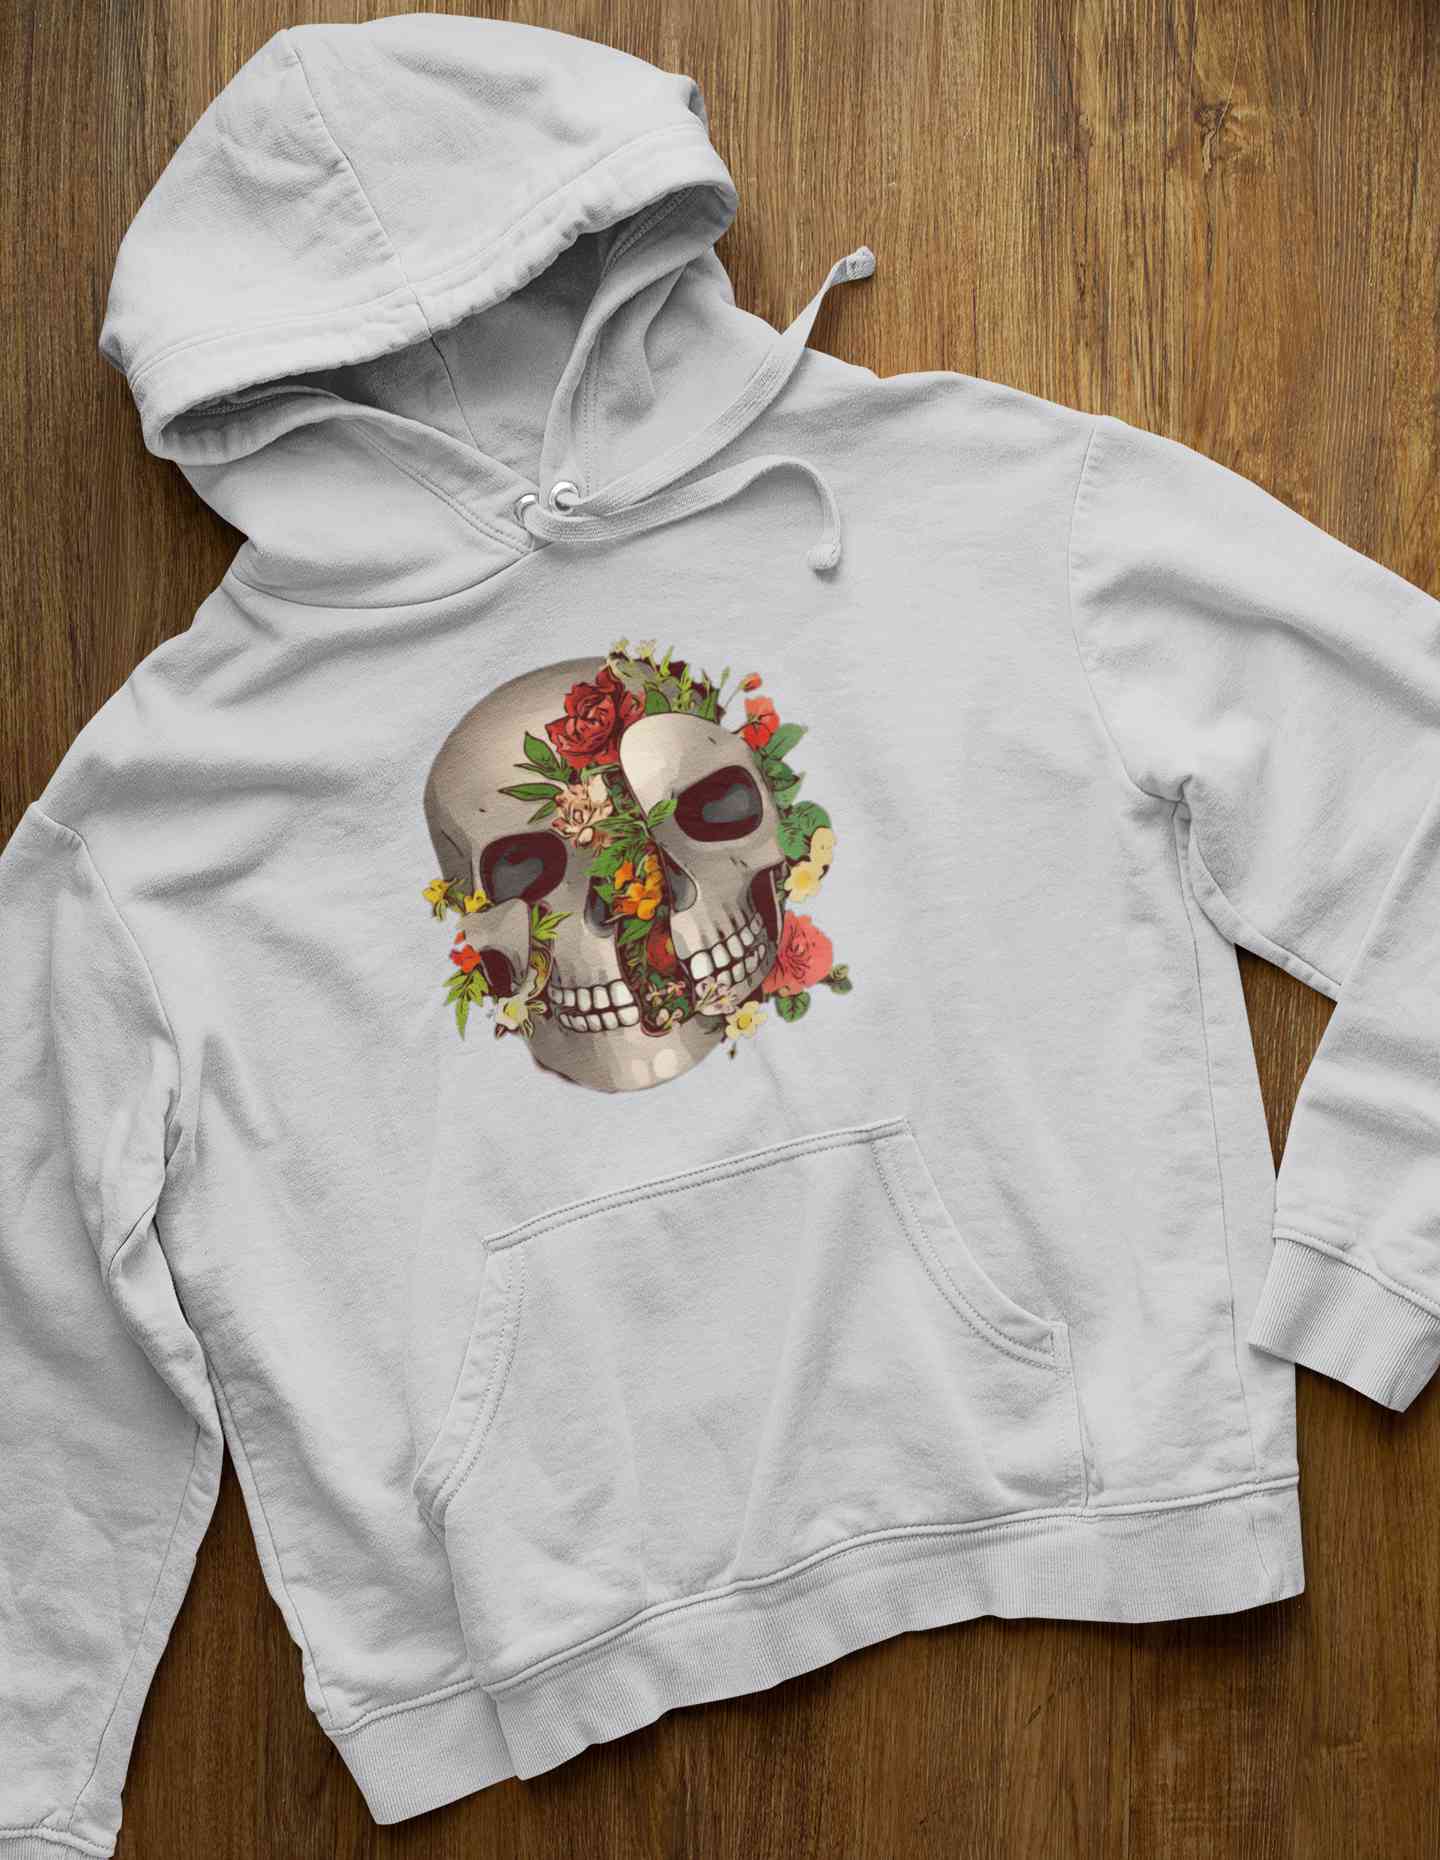 Floral And Skull Print Hoodies for Women-FunkyTeesClub